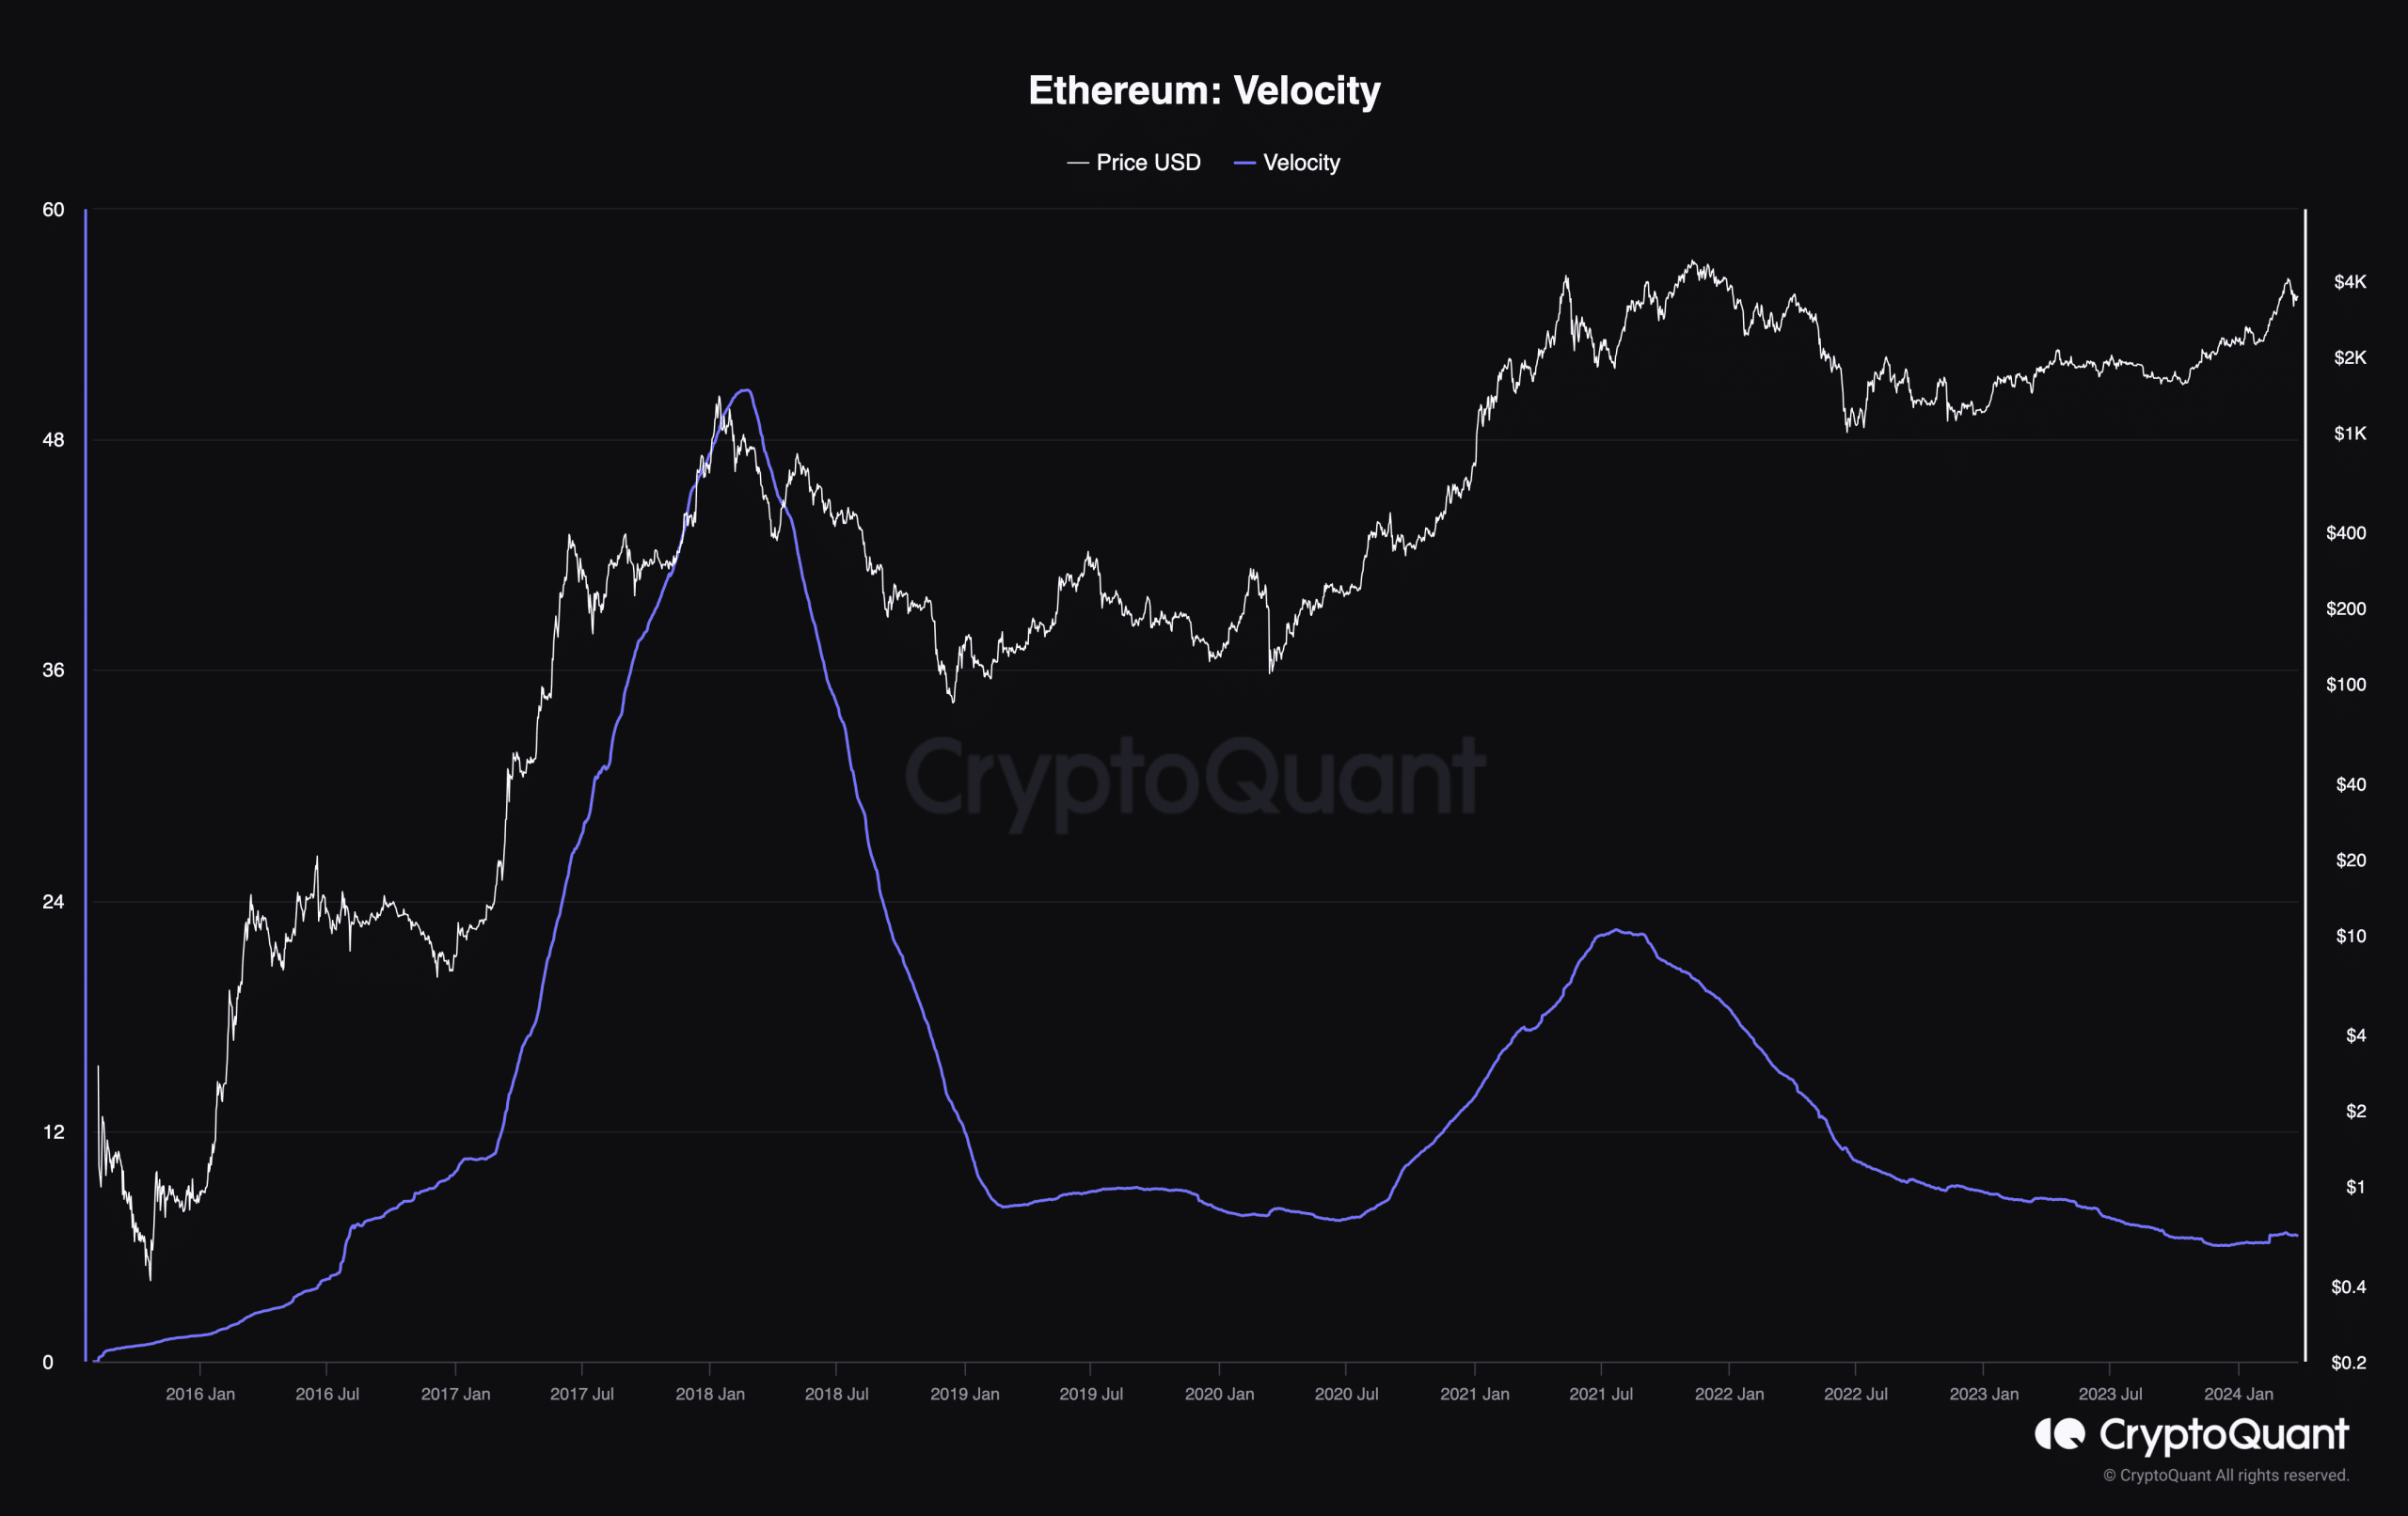 Velocidad de caída de Ethereum, lo que indica un aumento de precio